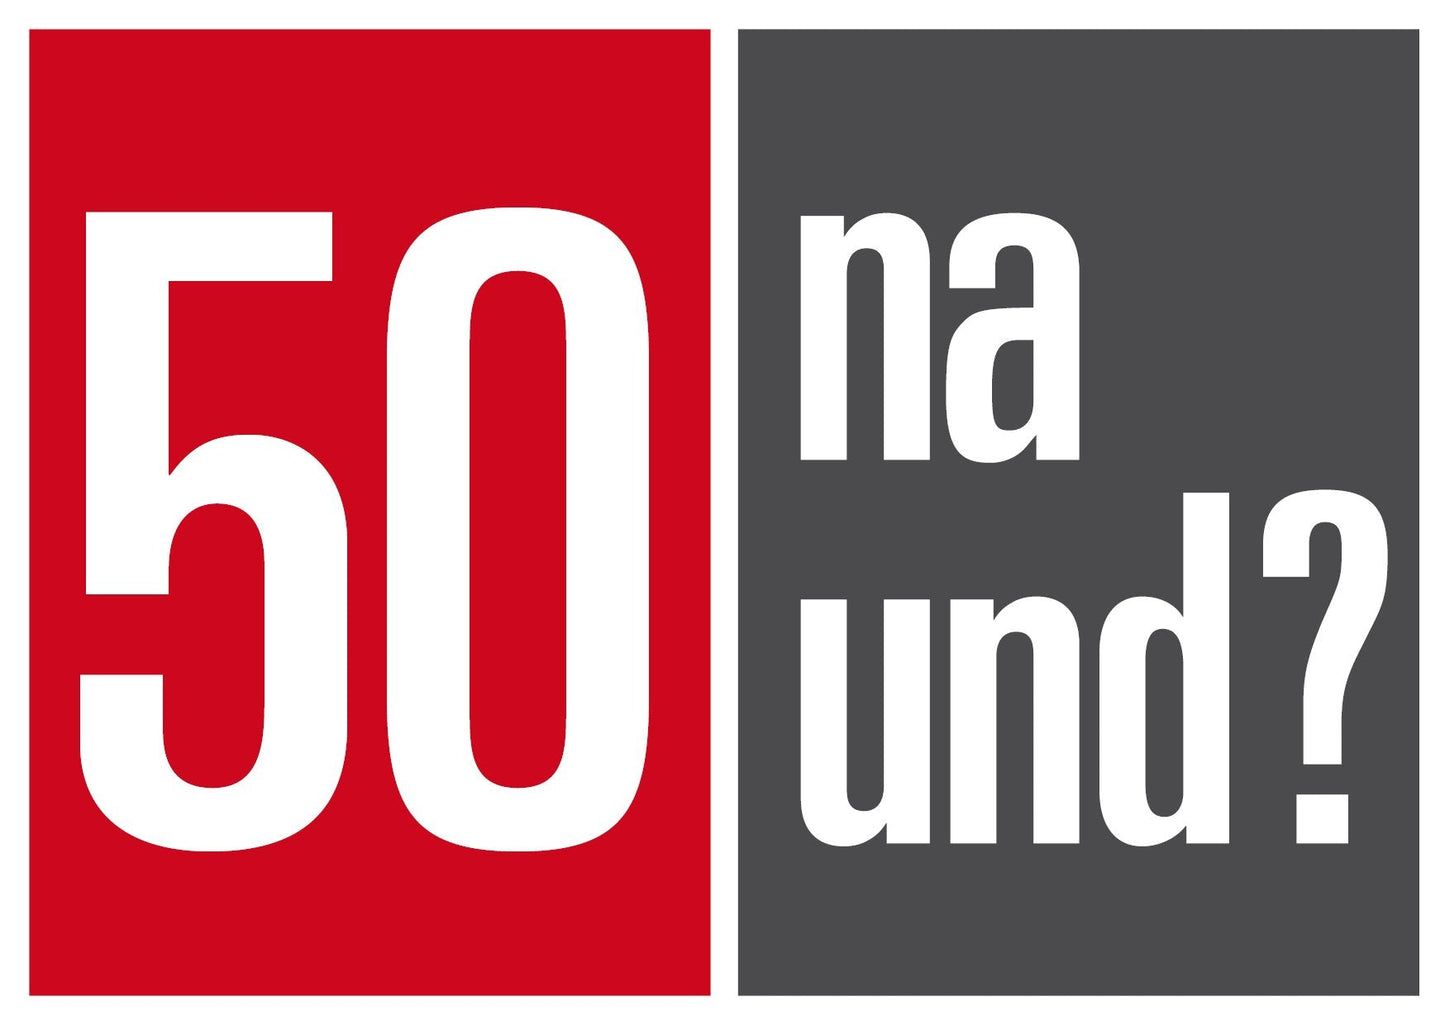 Einladung zum 50. Geburtstag: 50 na und?